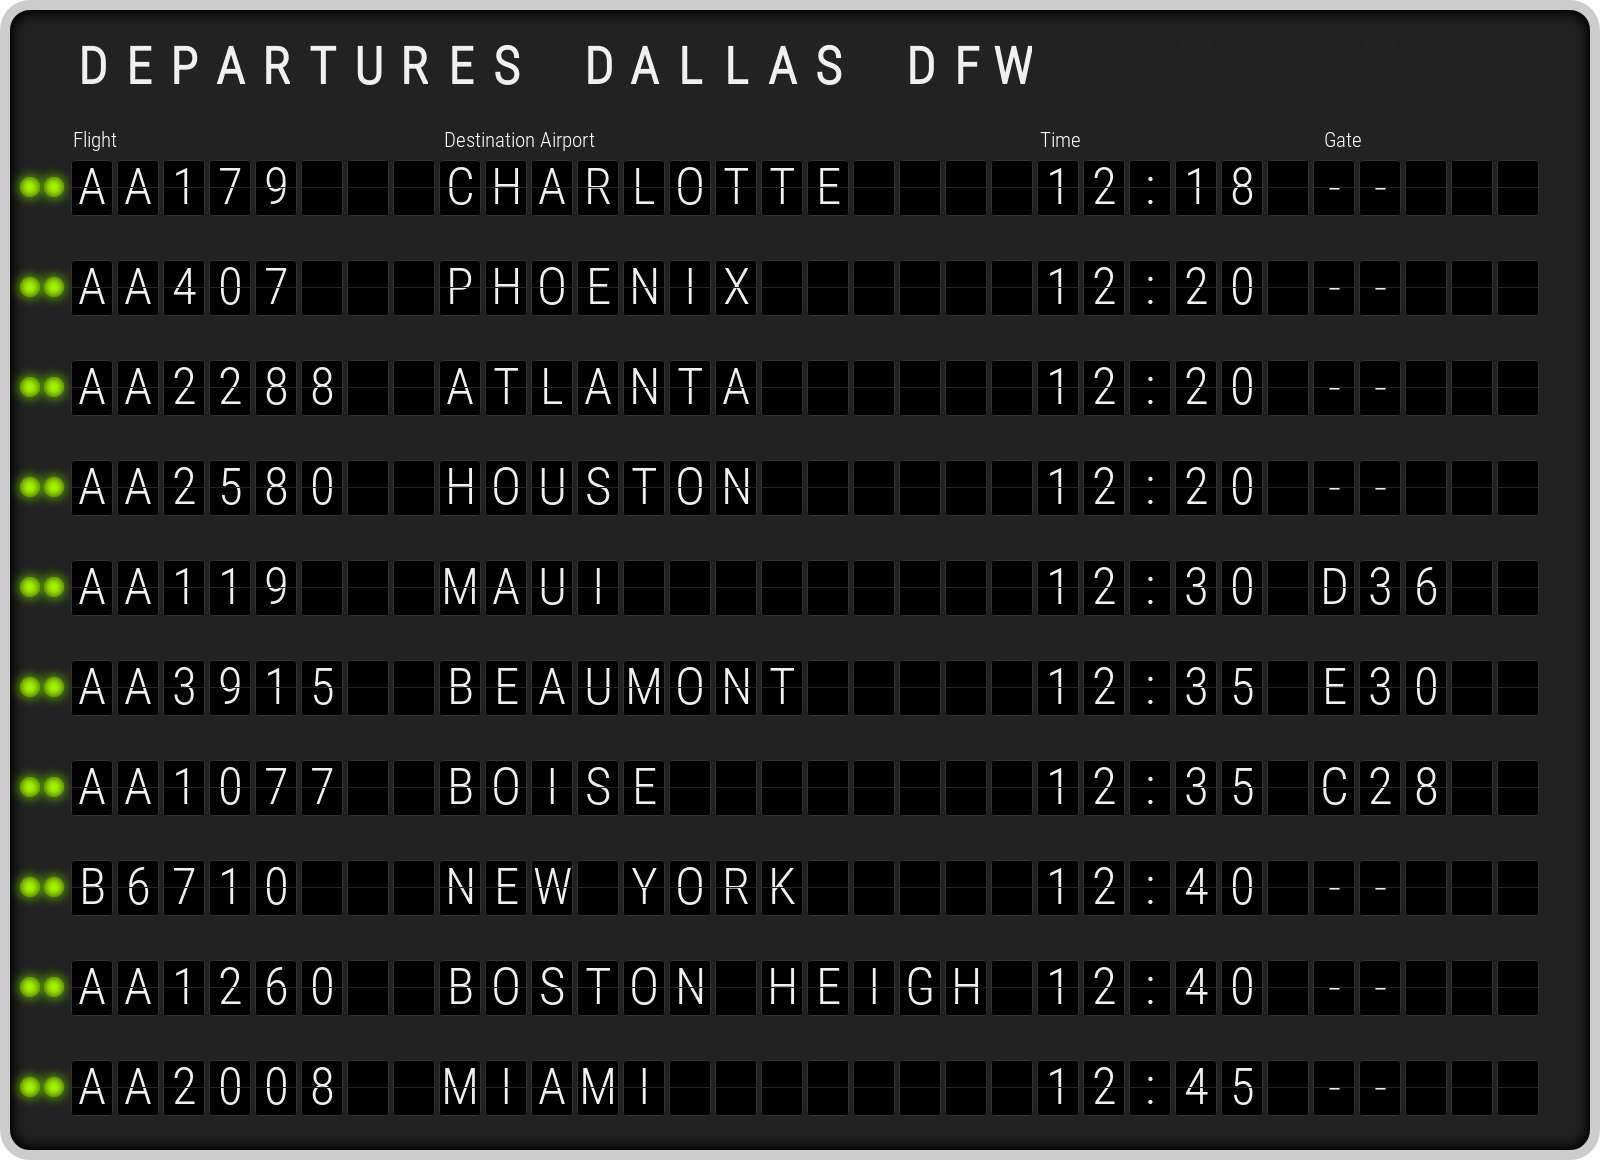 dfw departures